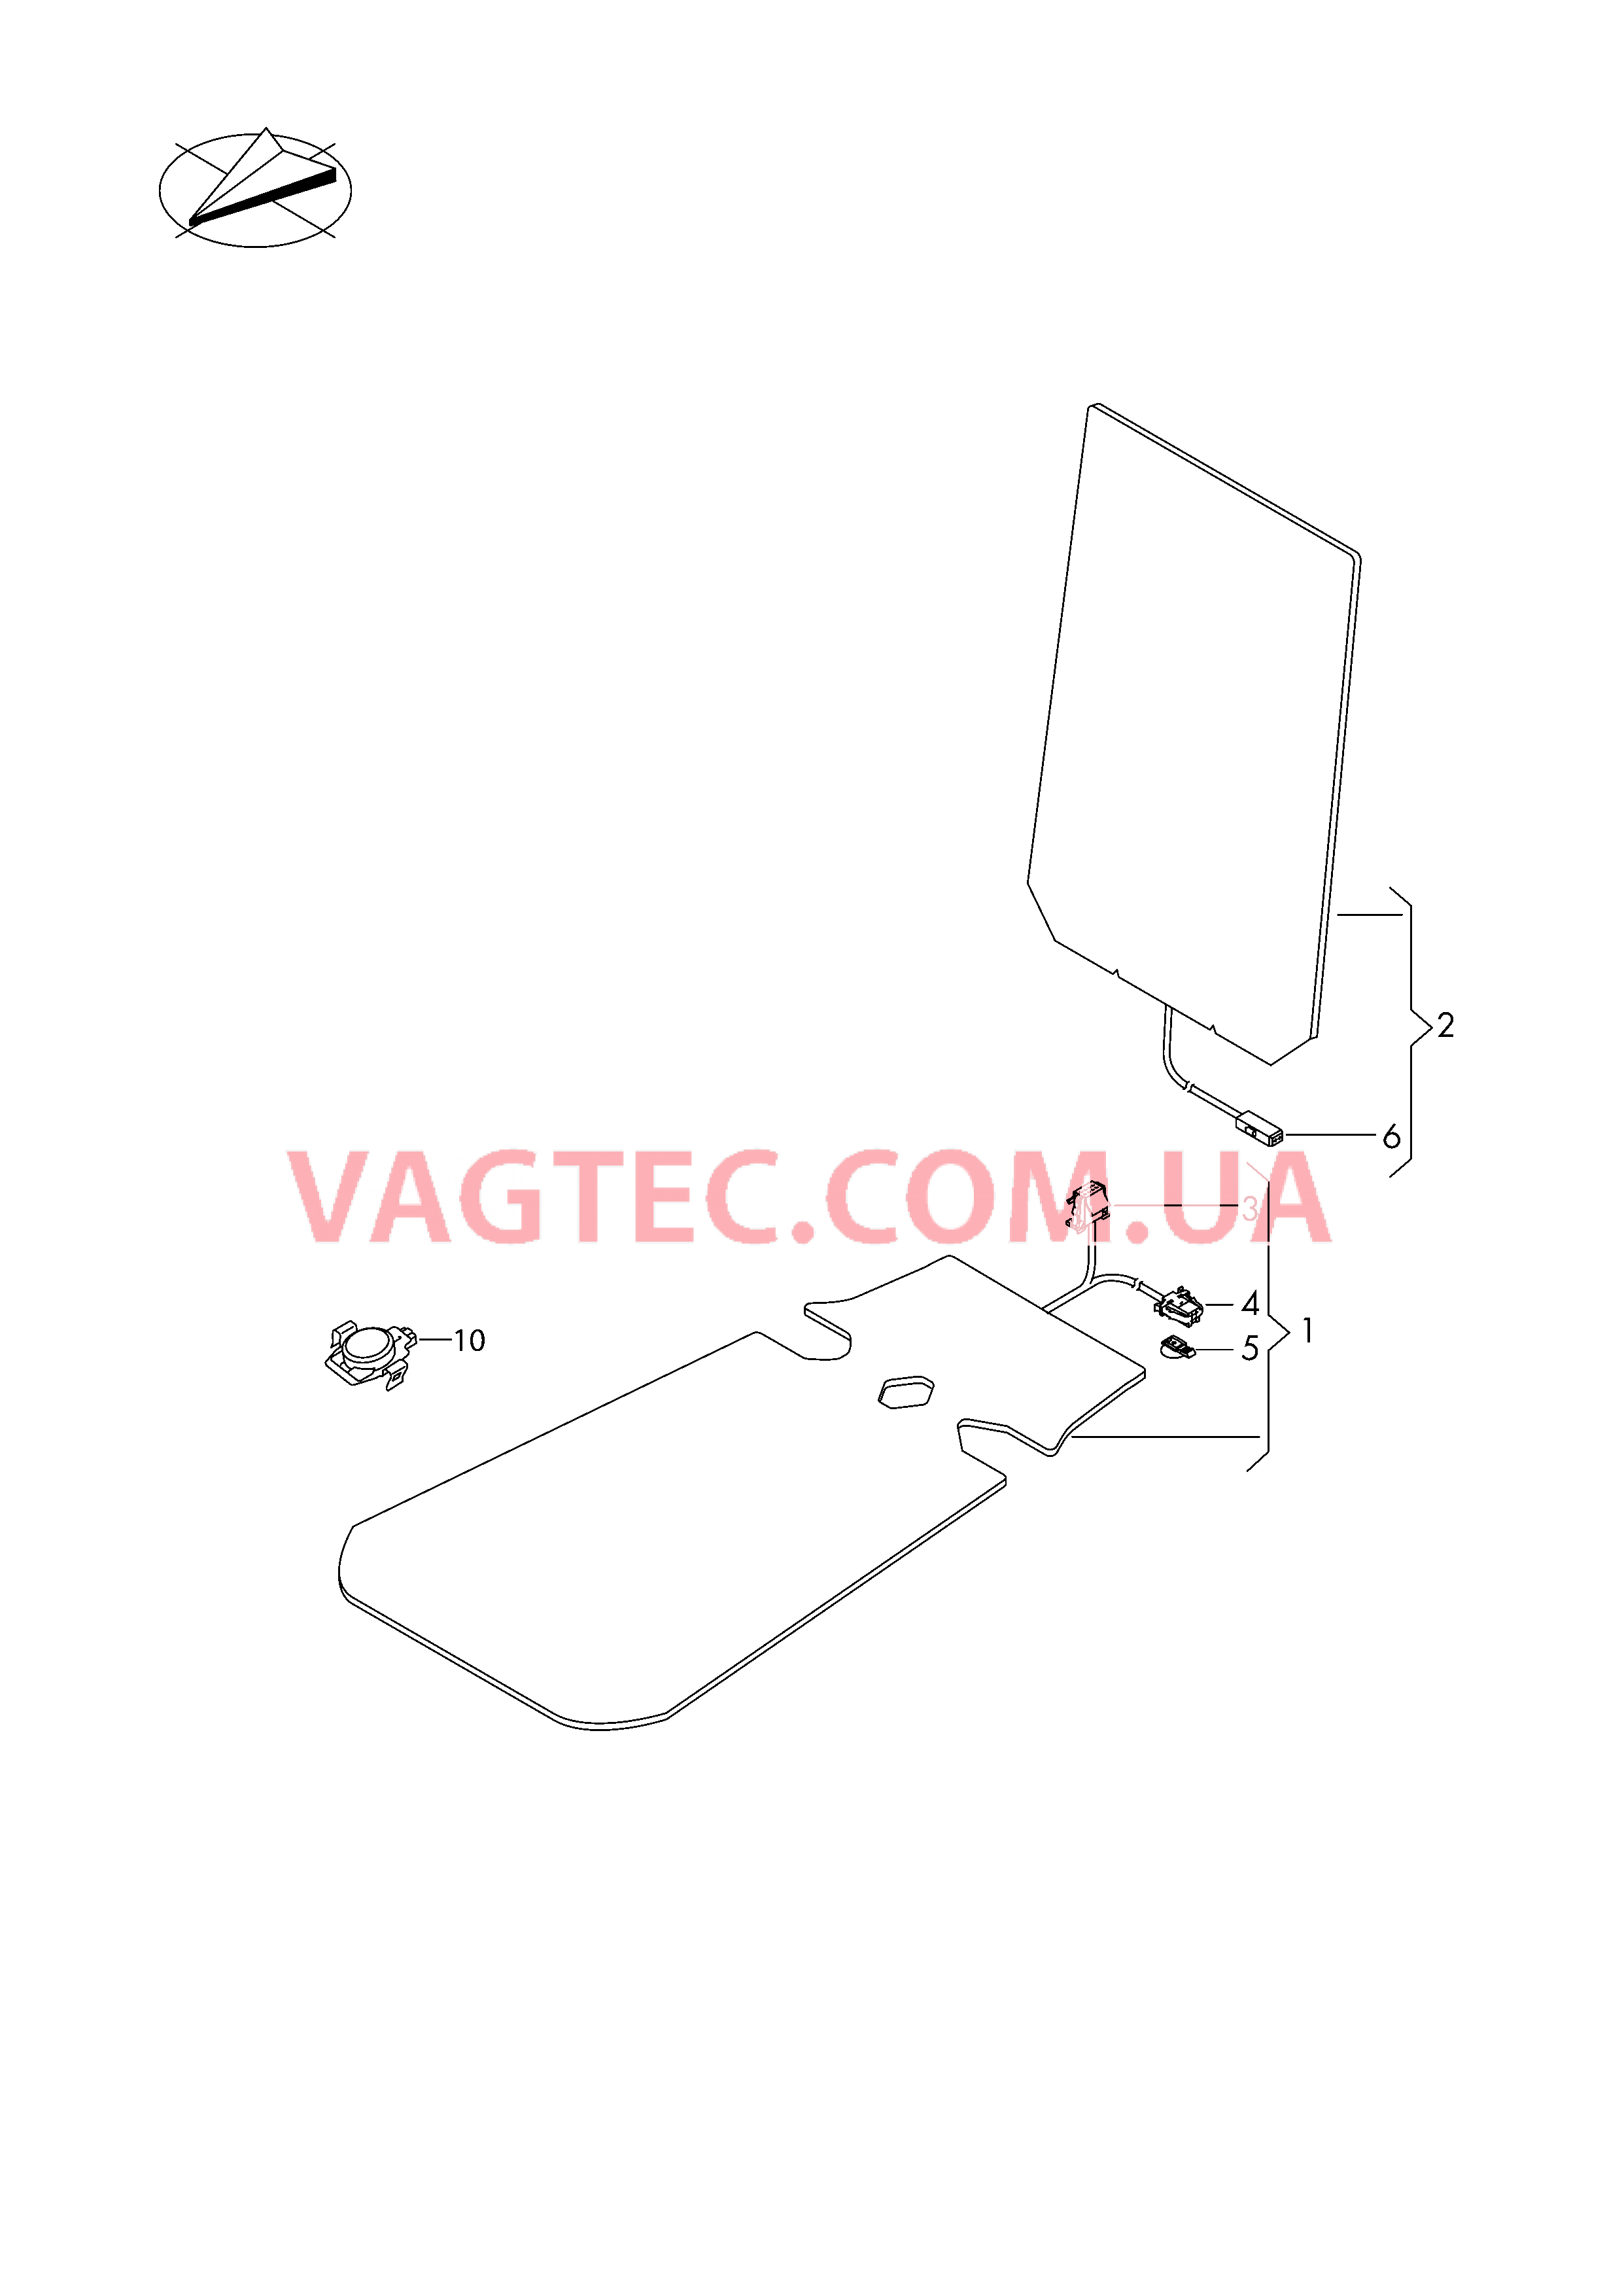 Электродетали для обогрева подушки и спинки сиденья  для VOLKSWAGEN TROC 2019